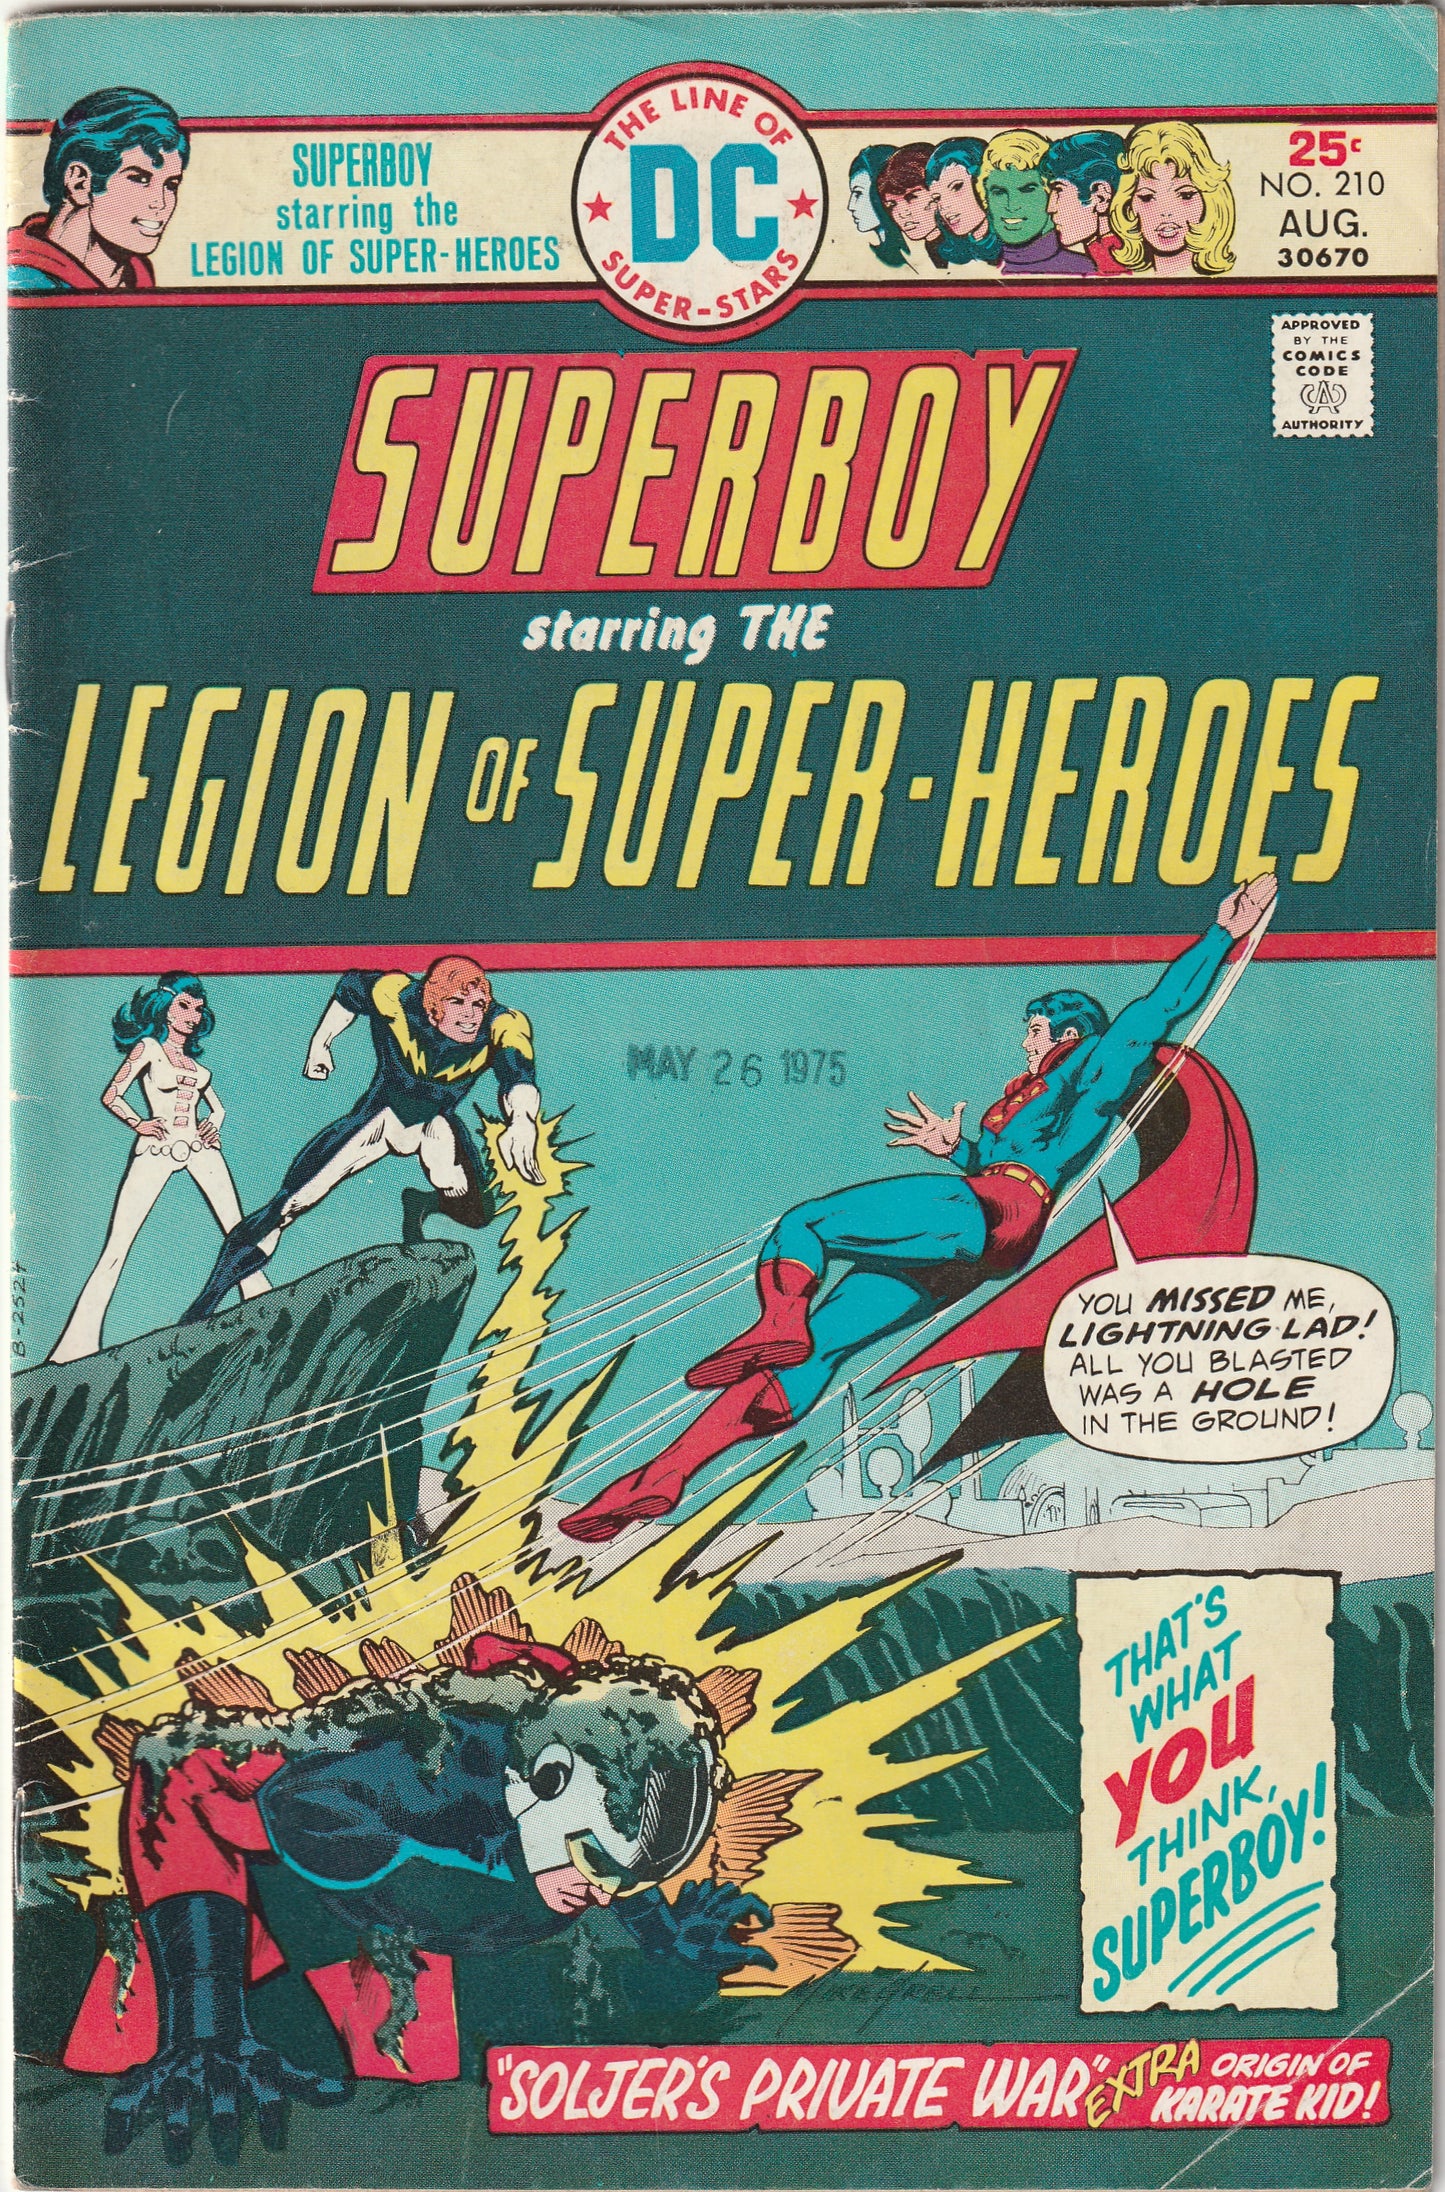 Superboy #210 (1975) - Starring the Legion of Super-Heroes - Origin Karate Kid